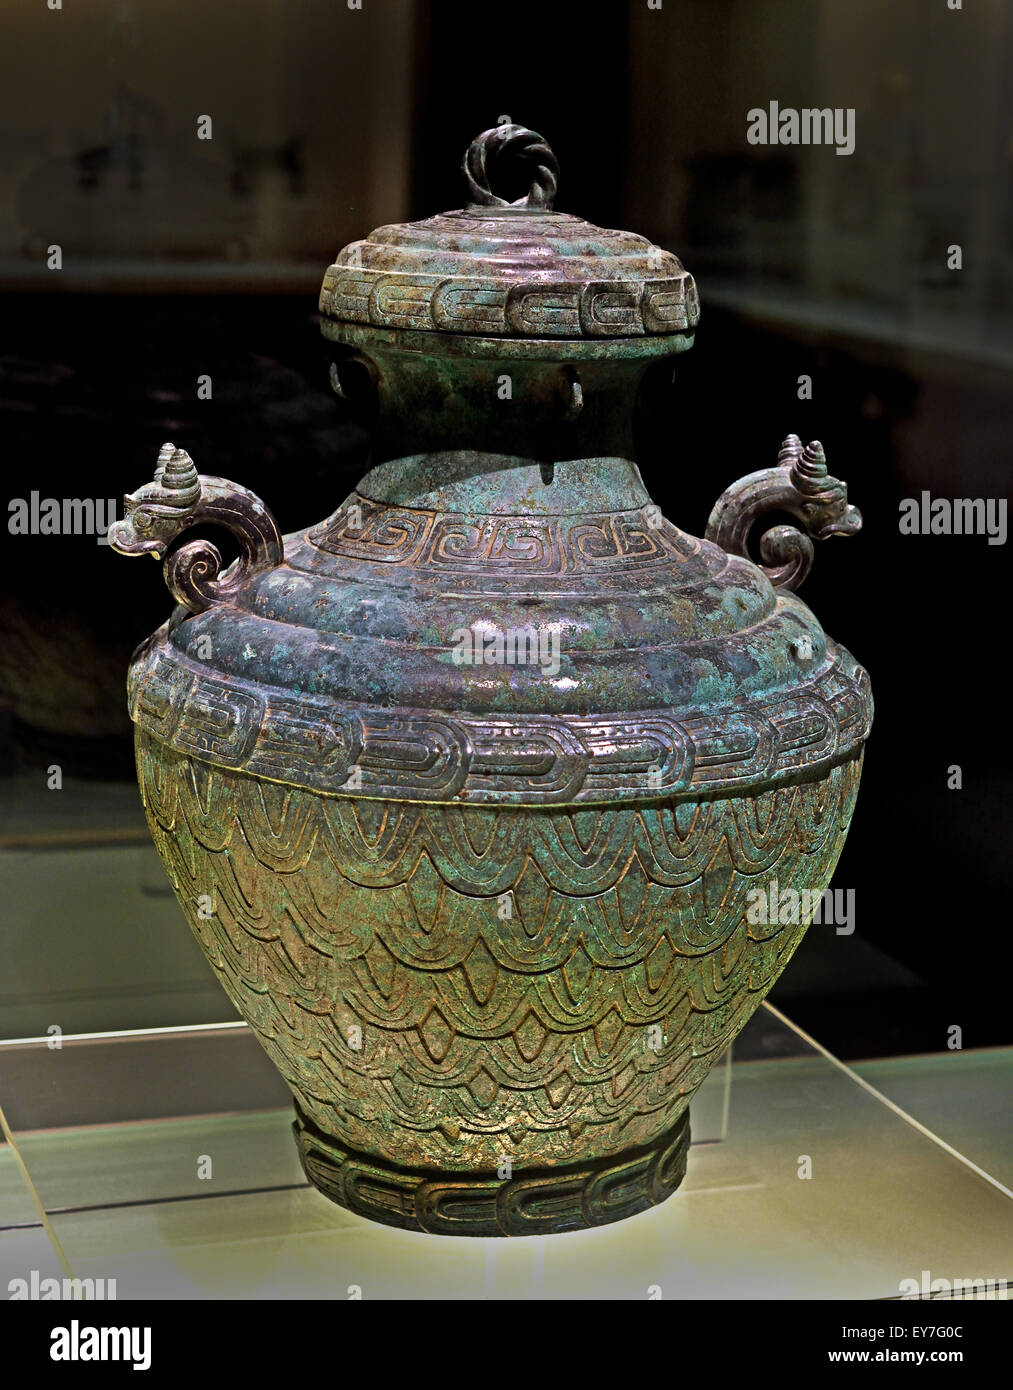 Zhong Yi Fu Ling Zhou de l'Ouest Milieu navire vin ( 11ème - 10ème siècle avant J.-C. ) Musée de Shanghai Bronze ancien art chinois Chine Banque D'Images